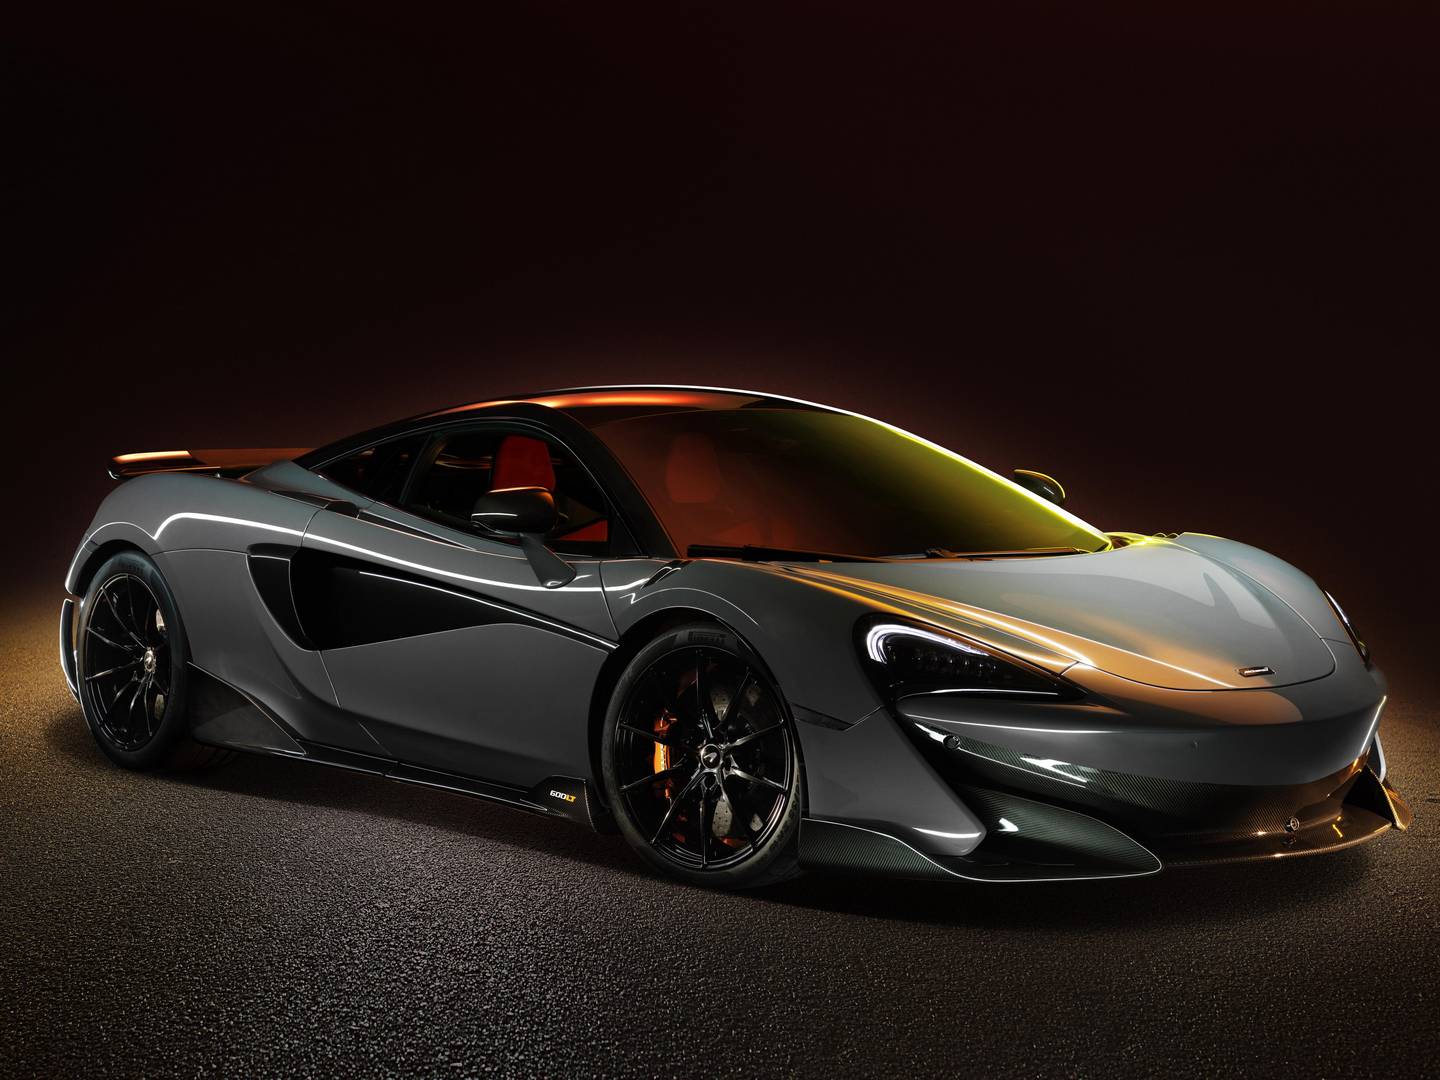 Он получает название «Longtail», которое он разделяет со знаковым McLaren F1 GTR Longtail и McLaren 675LT.